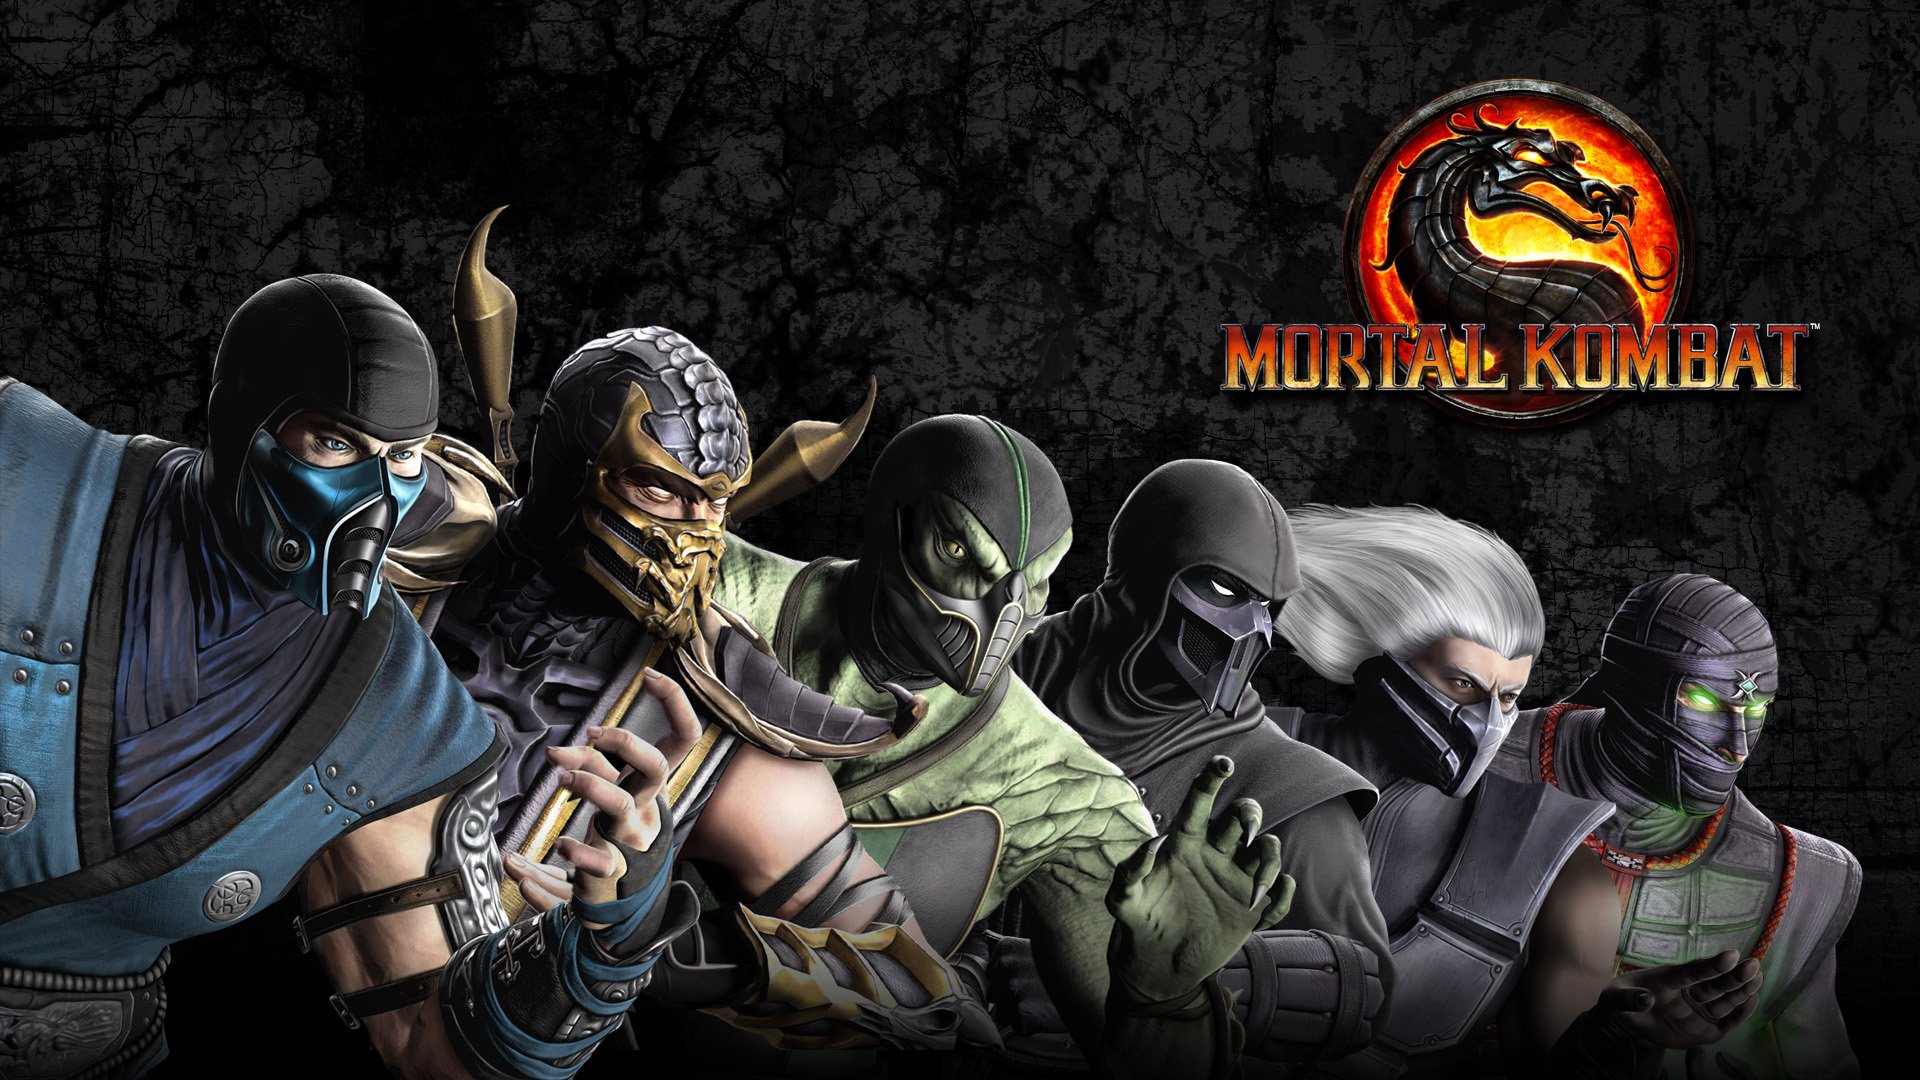 Mortal kombat 9 wallpapers